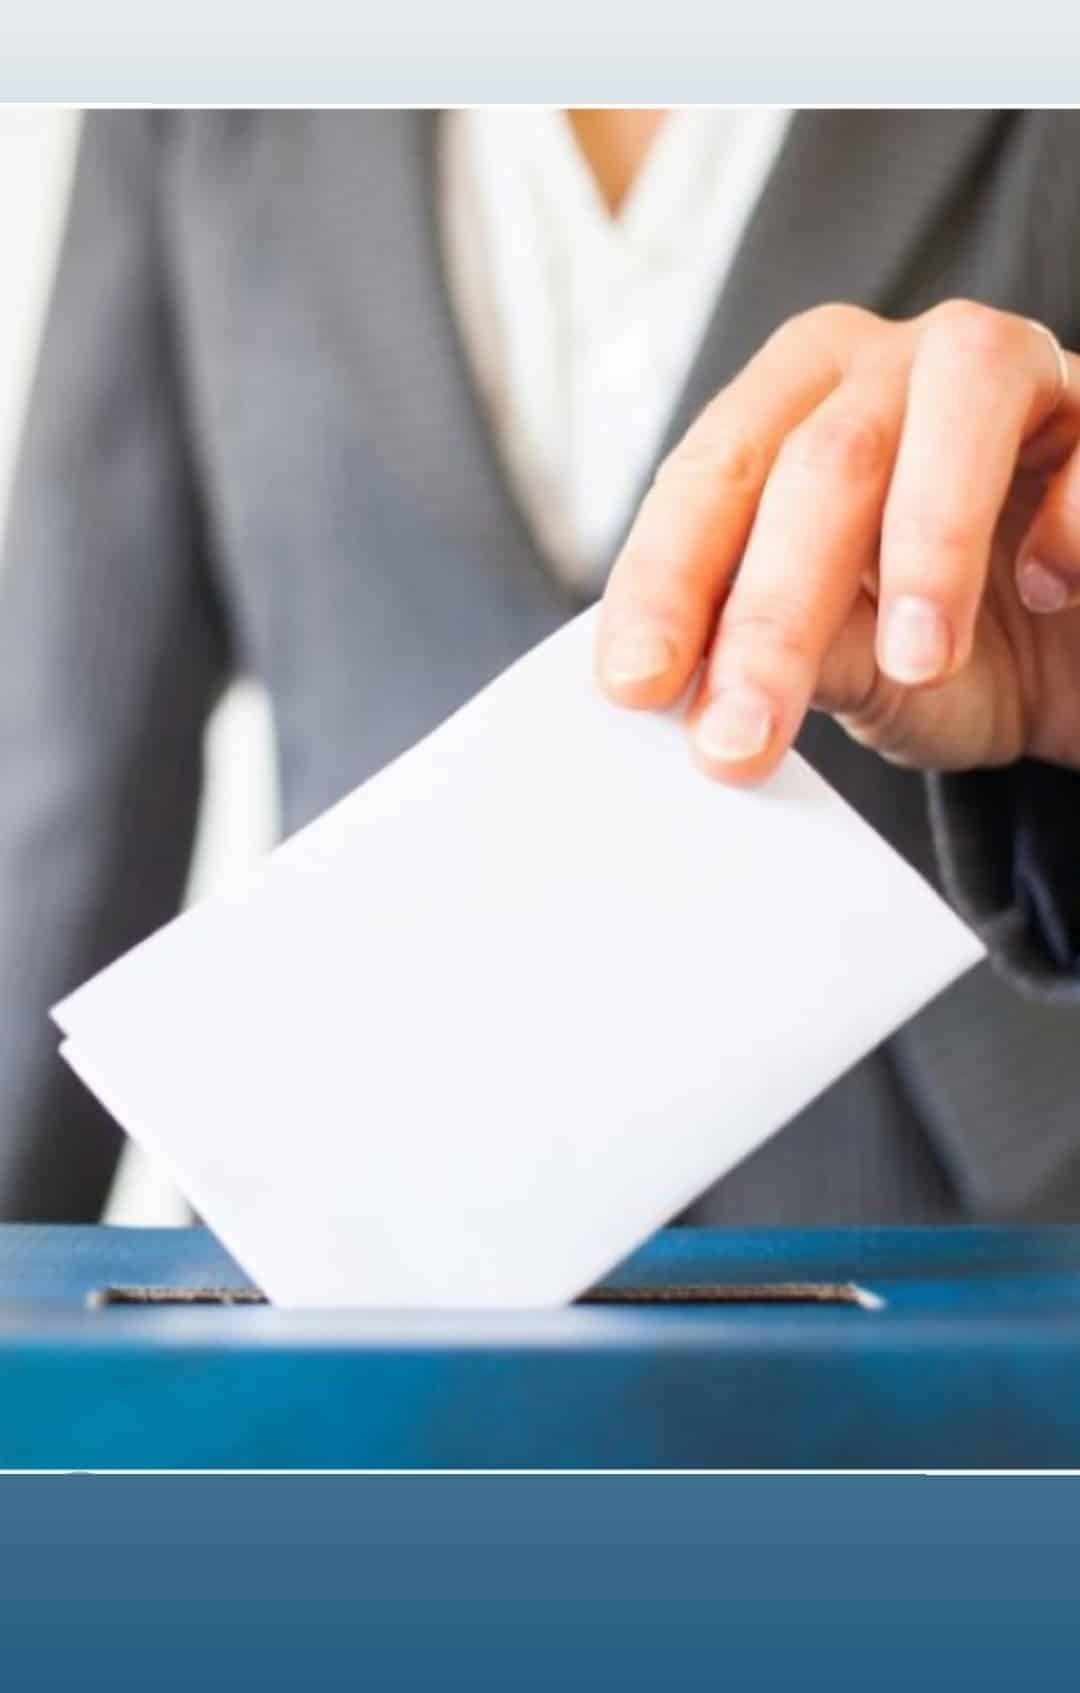 7 ΣΕΠΕ  καλούν τη ΔΟΕ  και τους υπόλοιπους συλλόγους σε  αποκλειστικά «δια ζώσης» διαδικασίες και αρχαιρεσίες – Λέμε ΟΧΙ στο ν. Χατζηδάκη και στις ηλεκτρονικές εκλογές